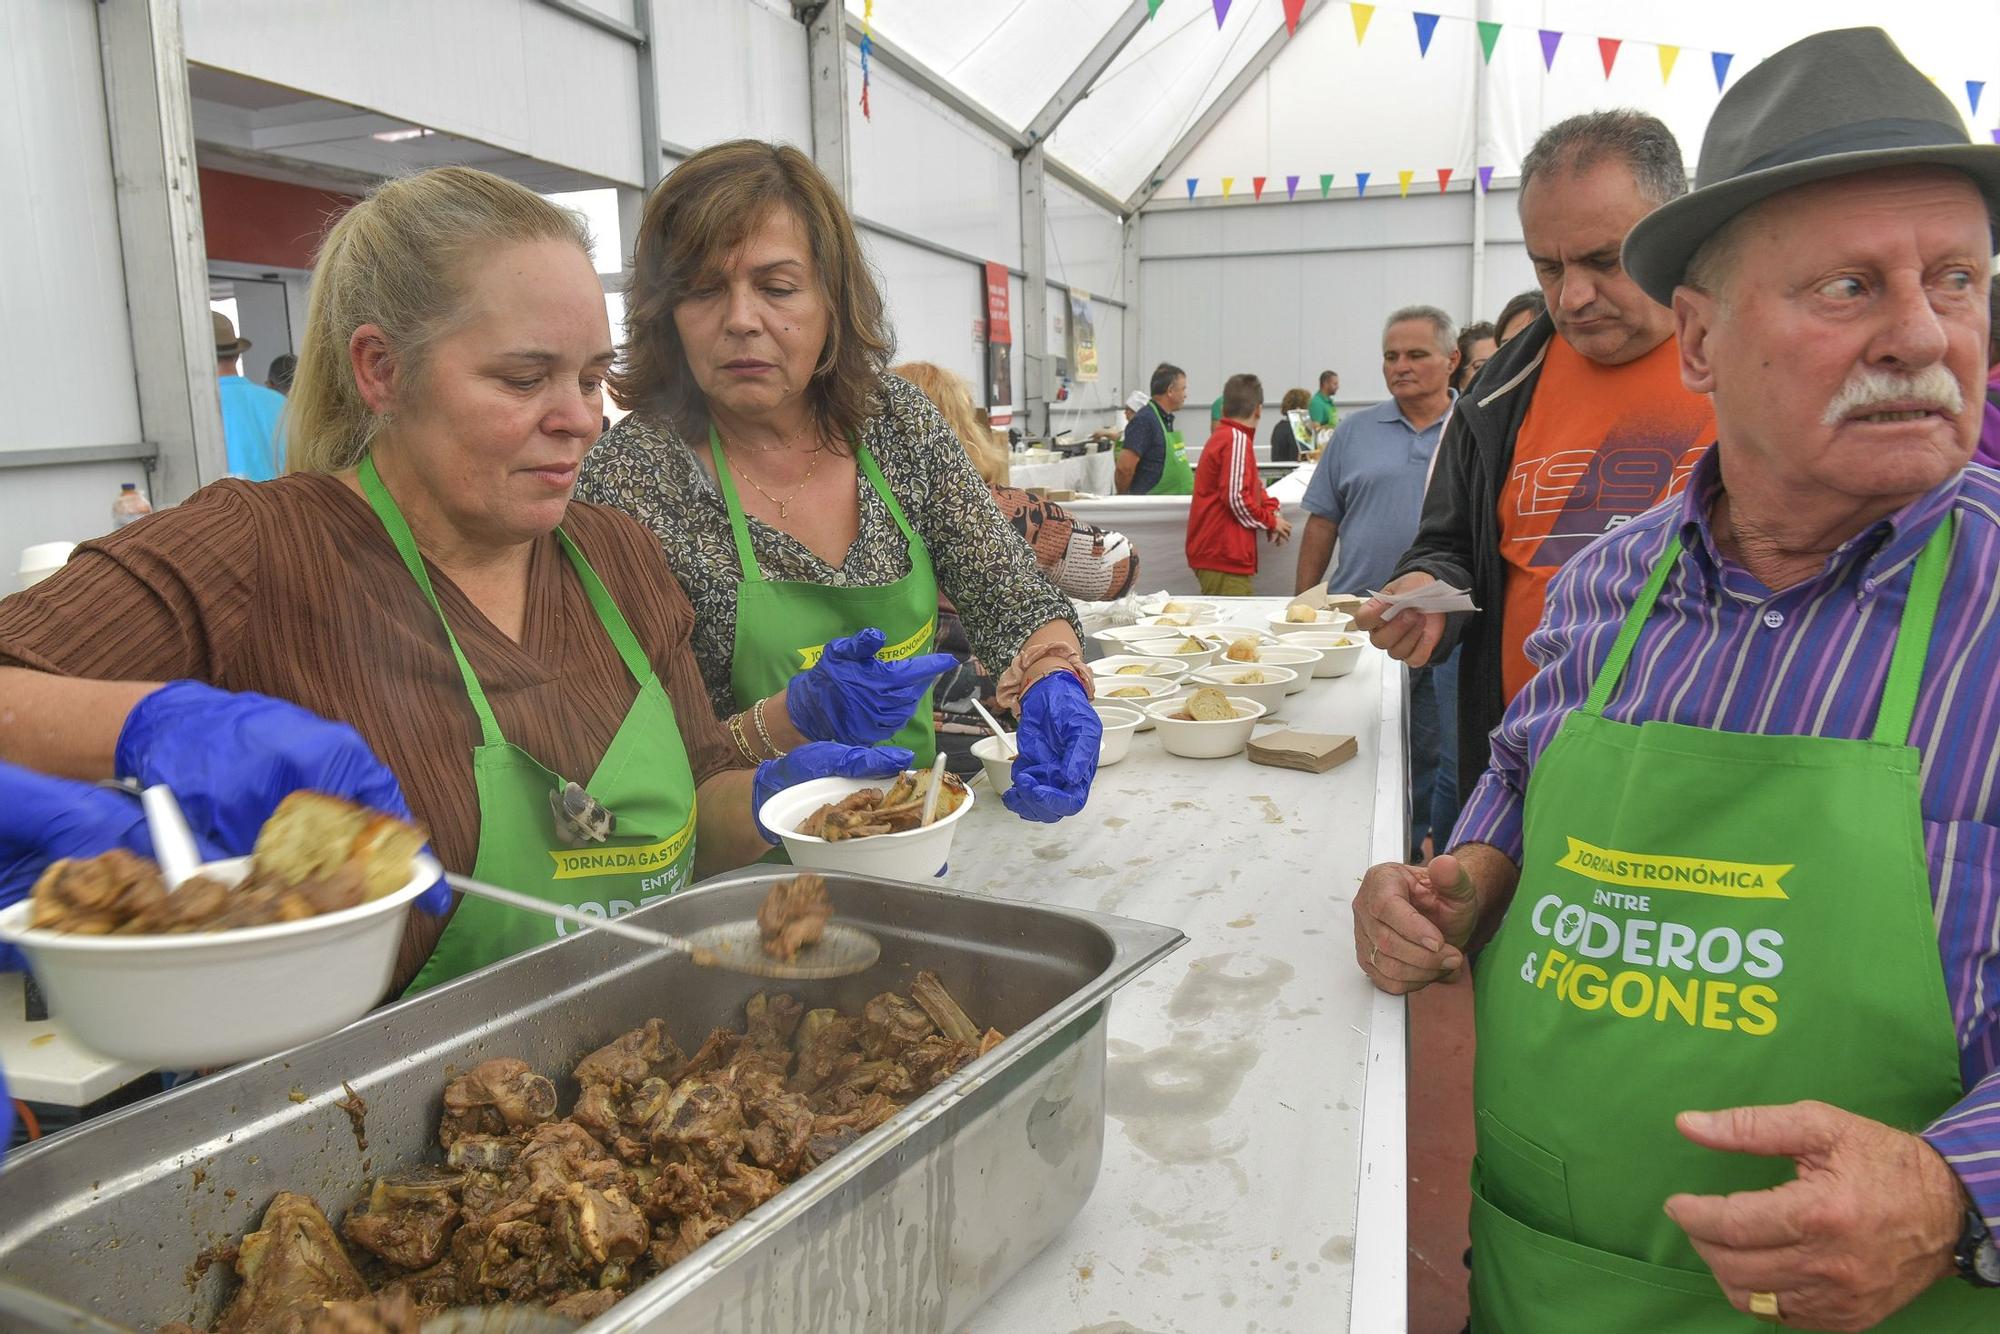 Jornada gastronómica entre corderos y fogones en Caideros de Gáldar